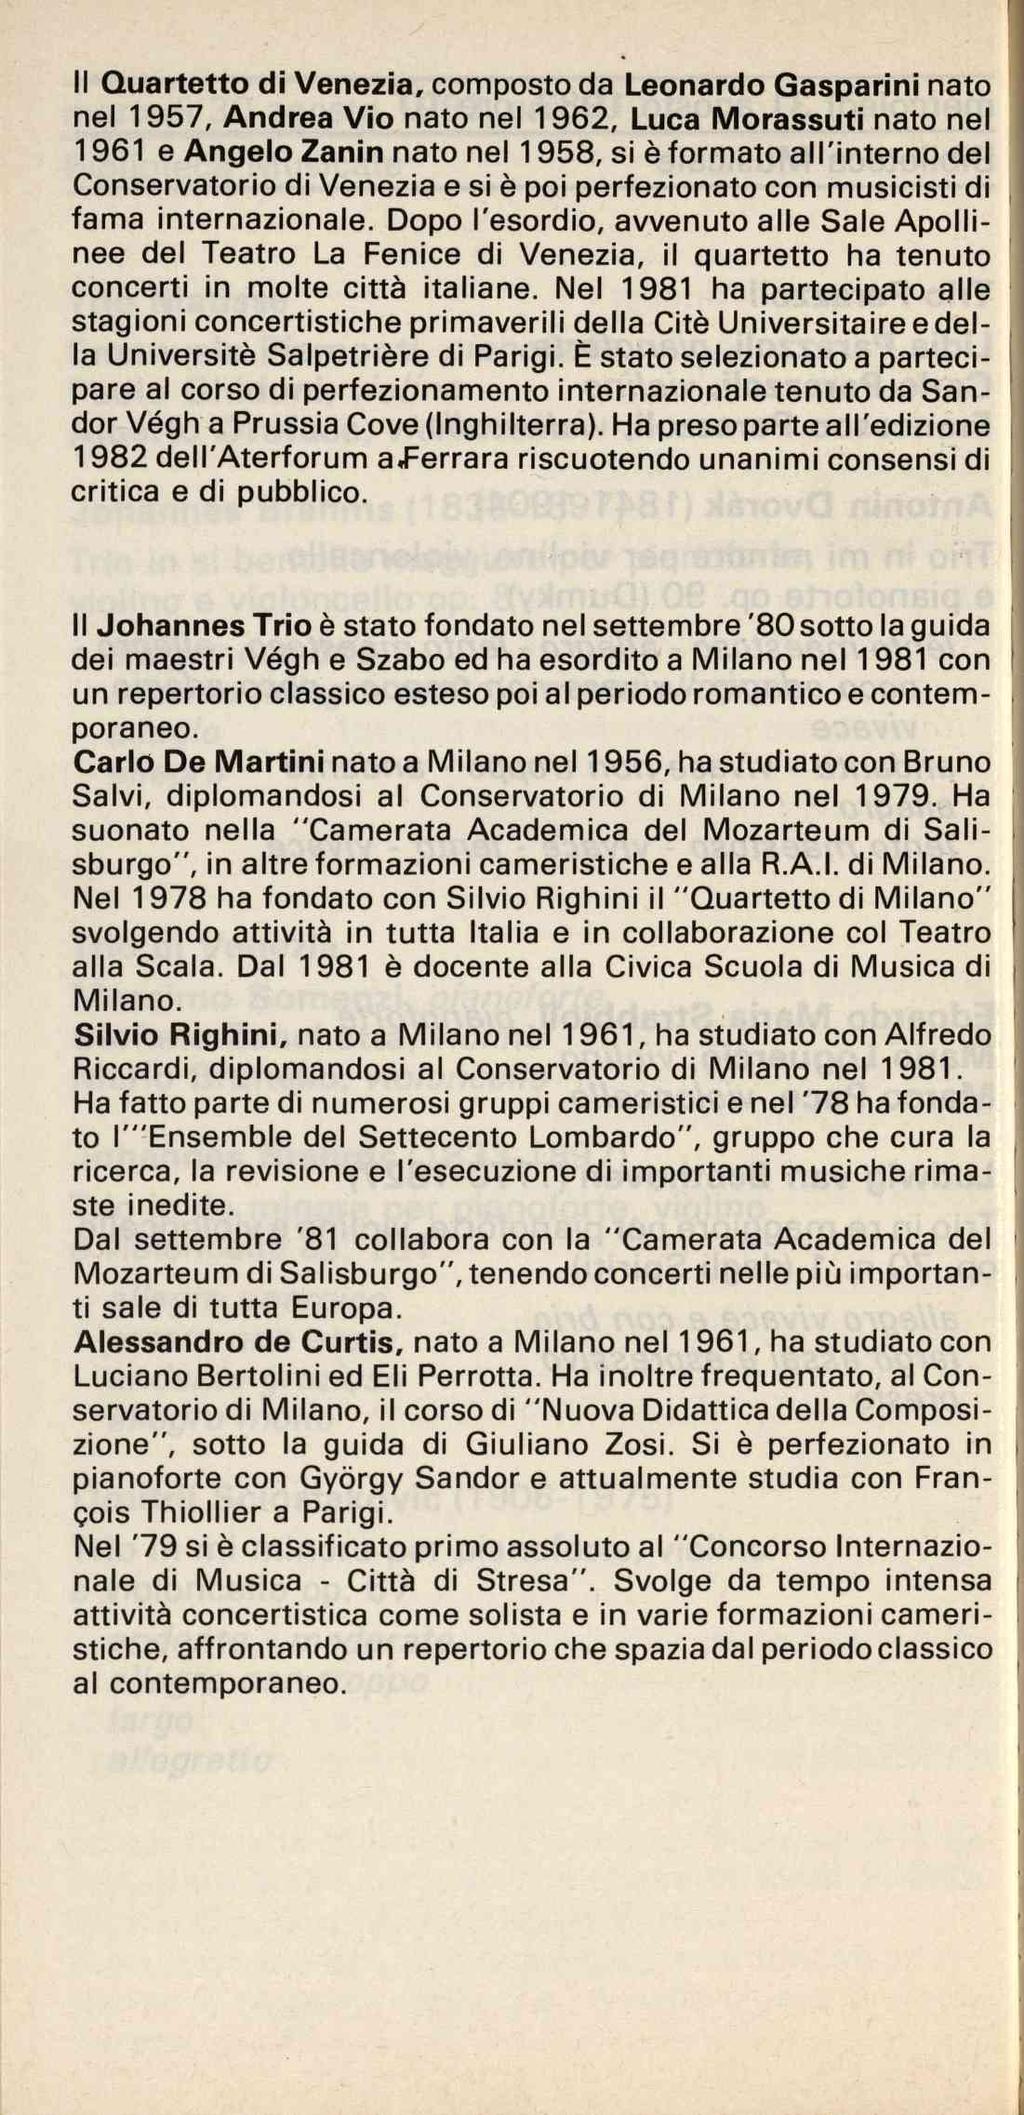 Il Quartetto di Venezia, composto da Leonardo Gasparini nato nel 1957, Andrea Vio nato nel 1962, Luca Morassuti nato nel 1961 e Angelo Zanin nato nel 1958, si è formato all'interno del Conservatorio